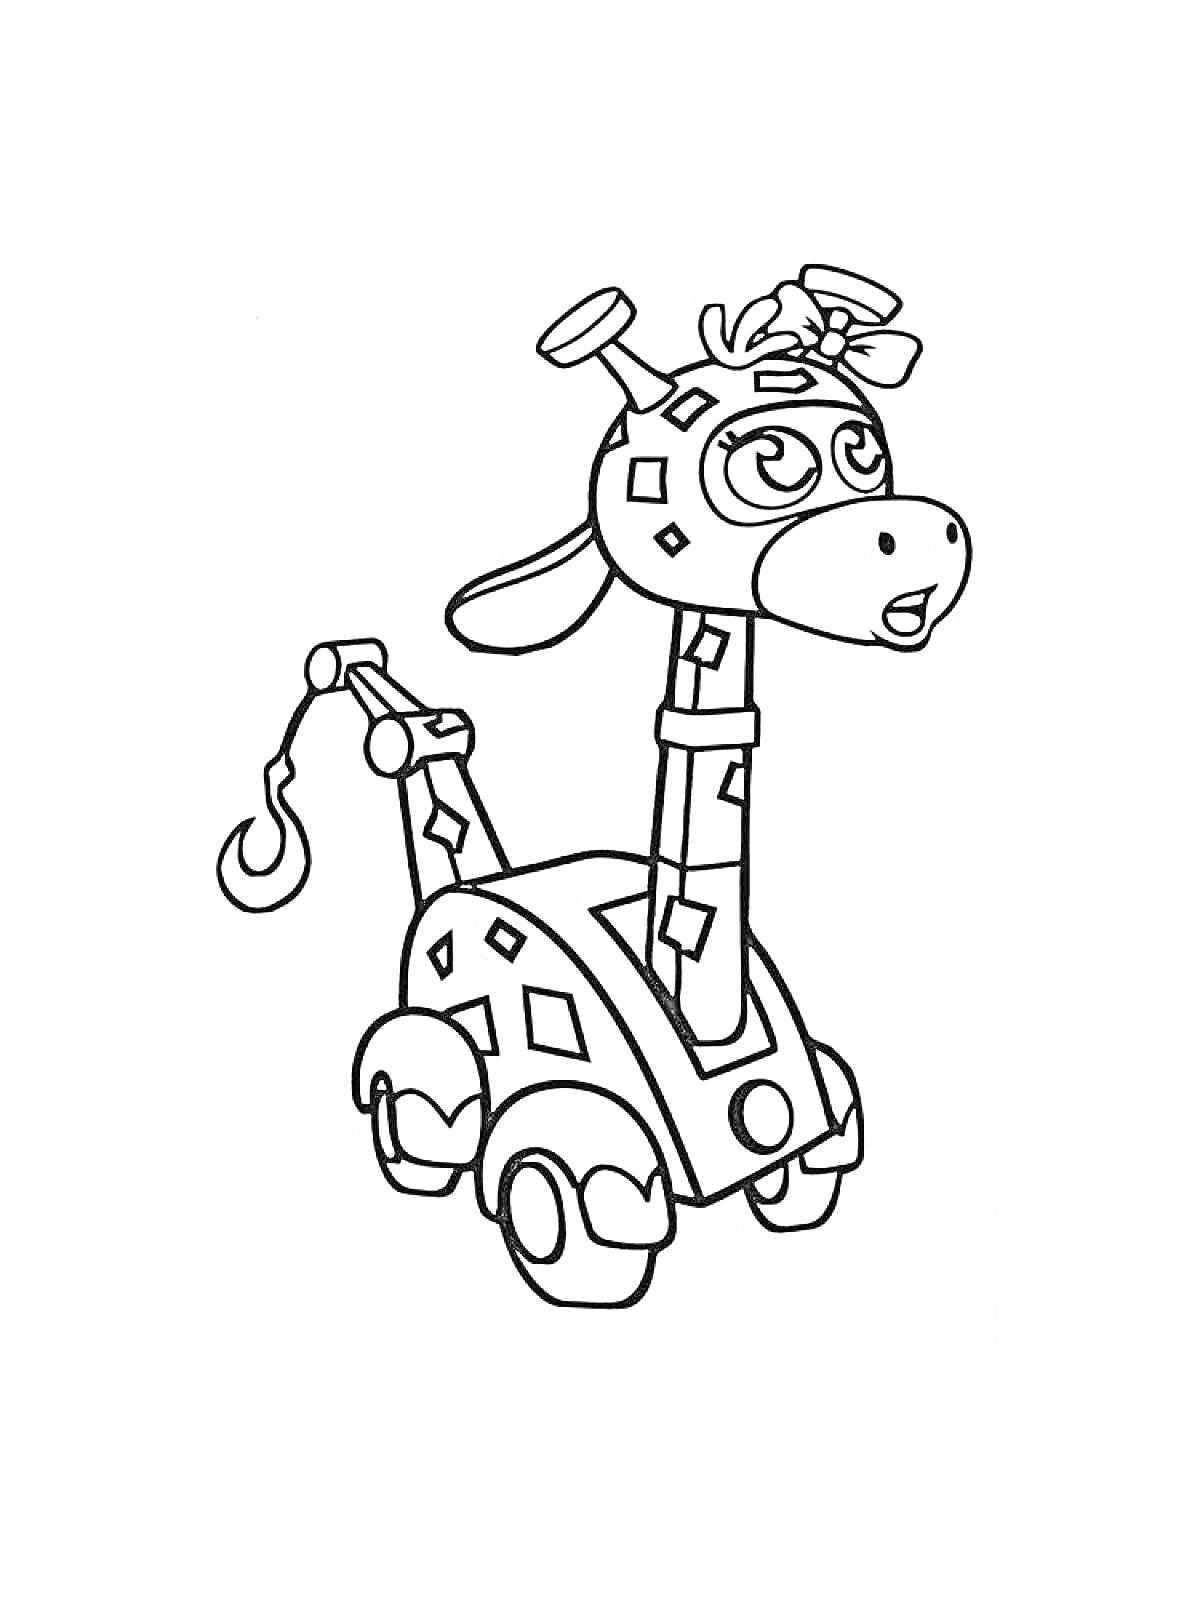 Раскраска Жираф-автомобиль с крючком на хвосте из мультфильма 